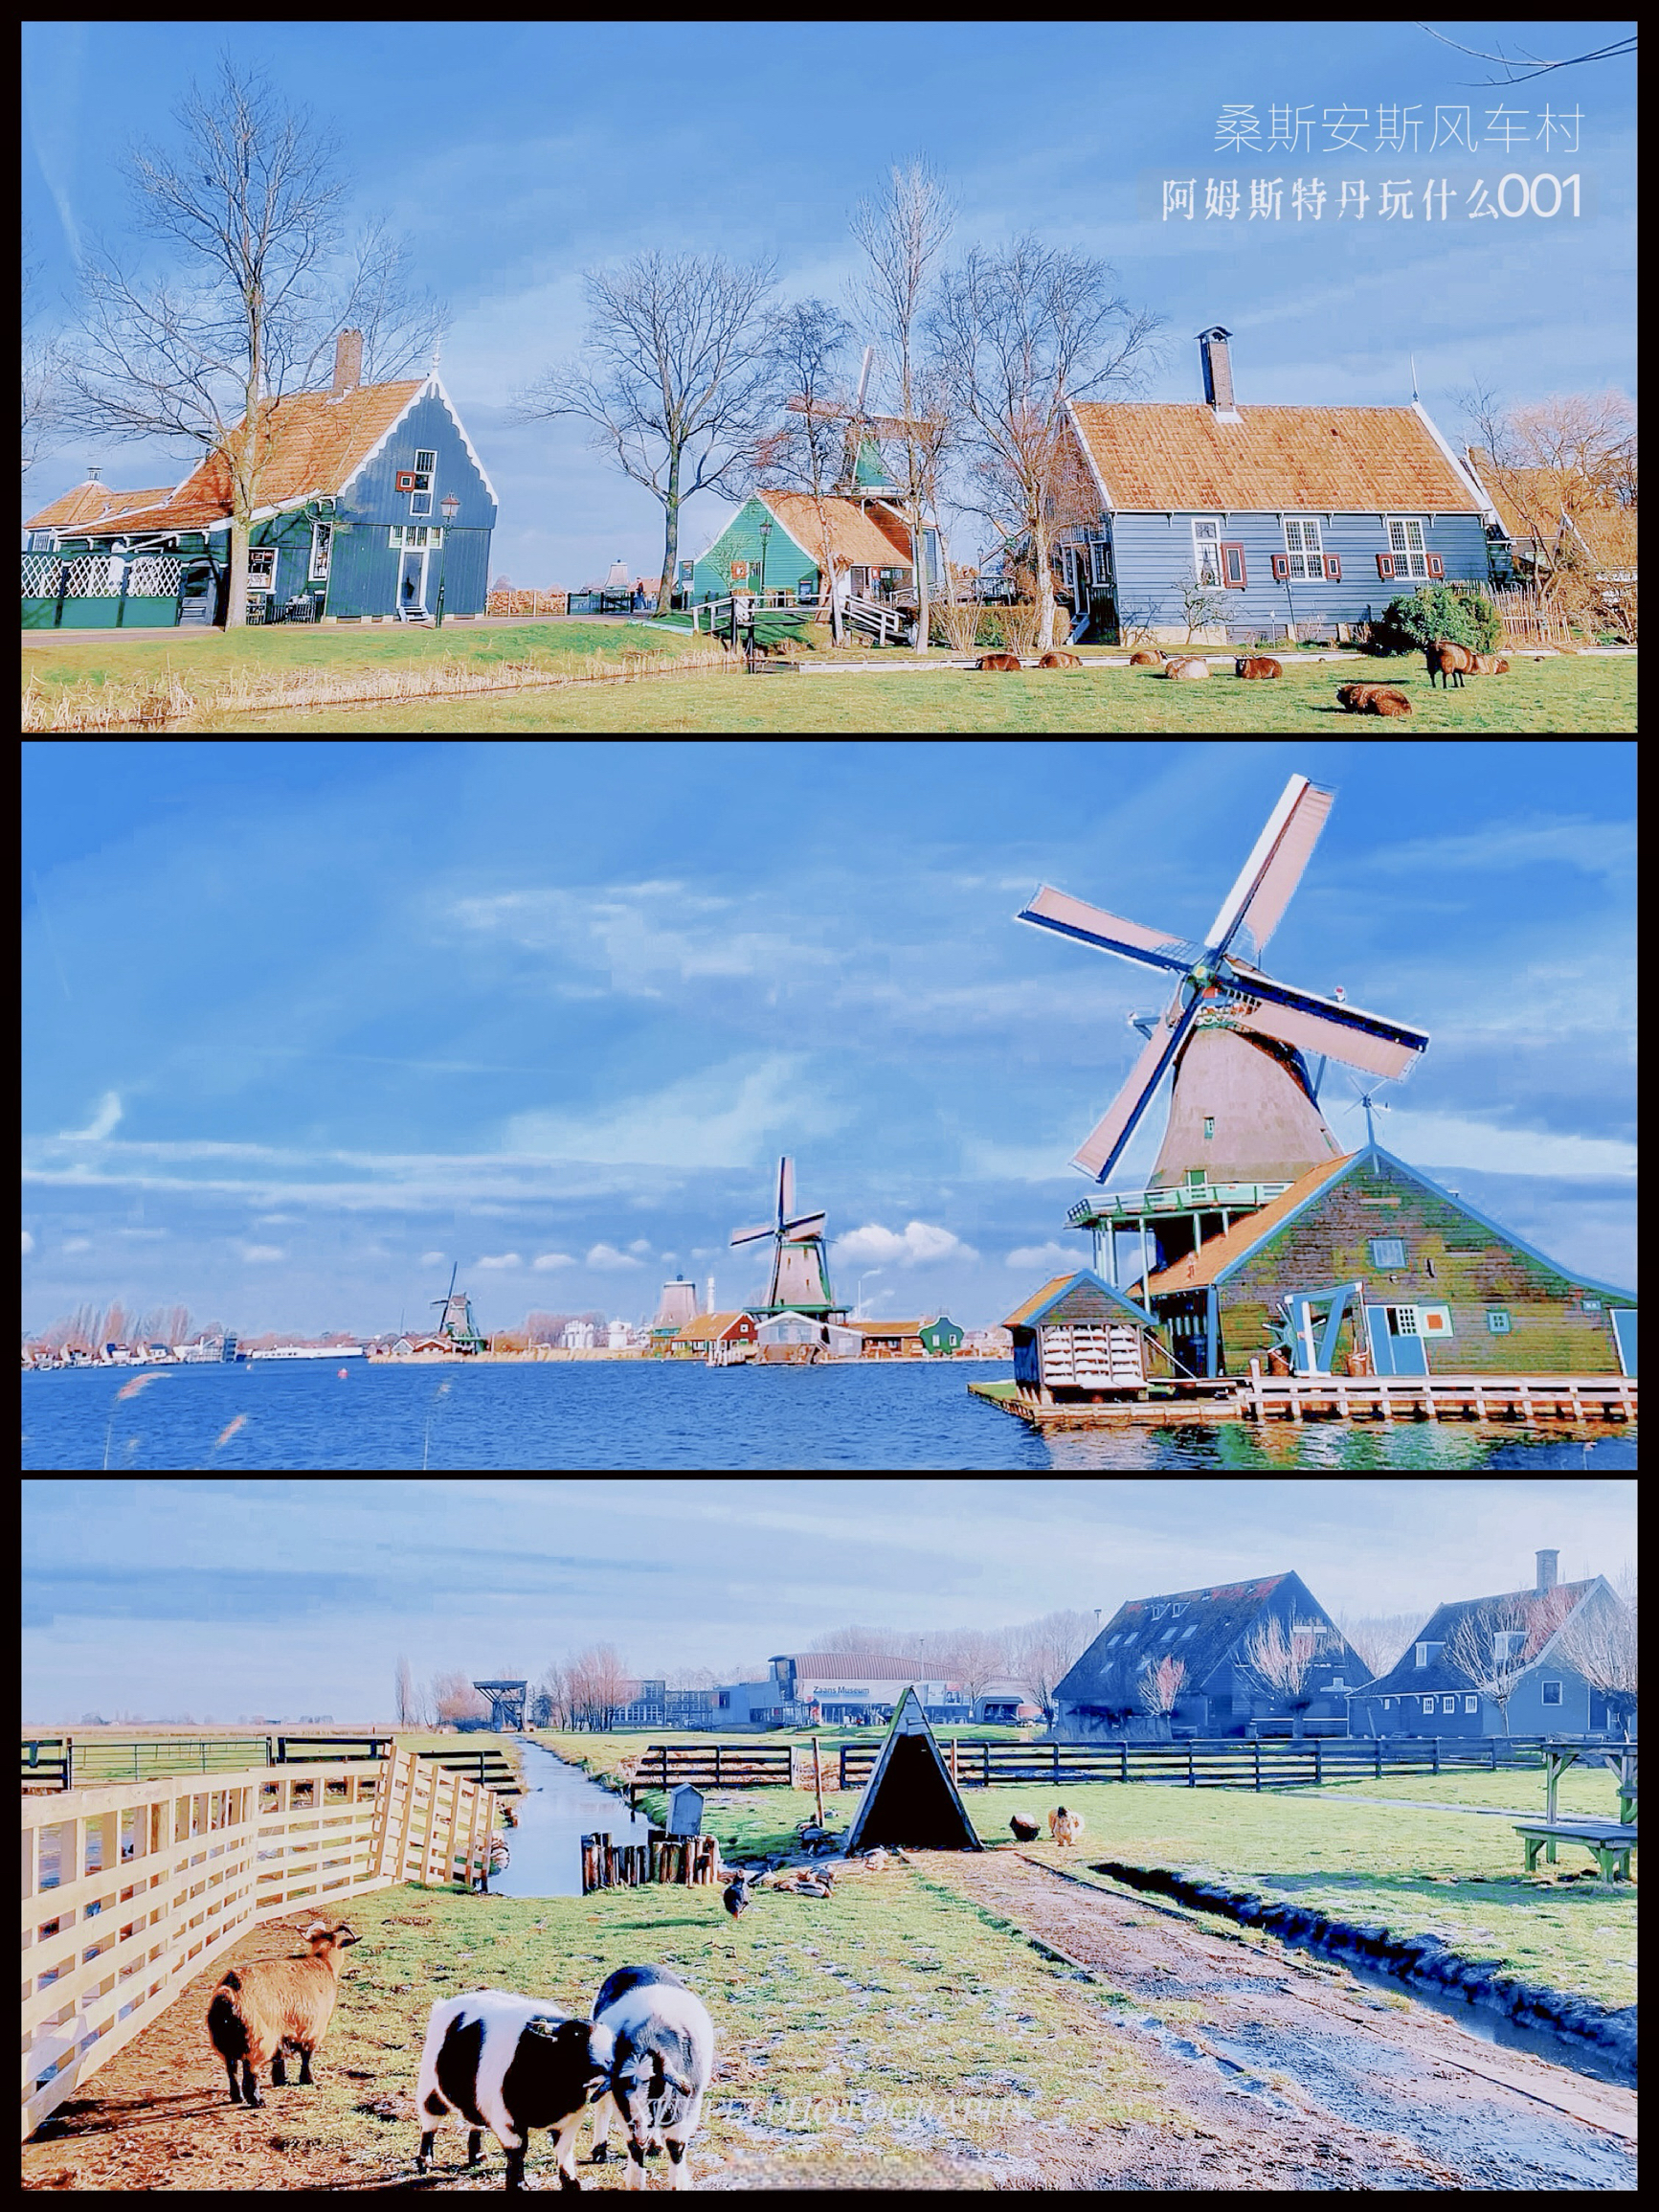 阿姆斯特丹的童话小镇| 桑斯安斯风车村💕